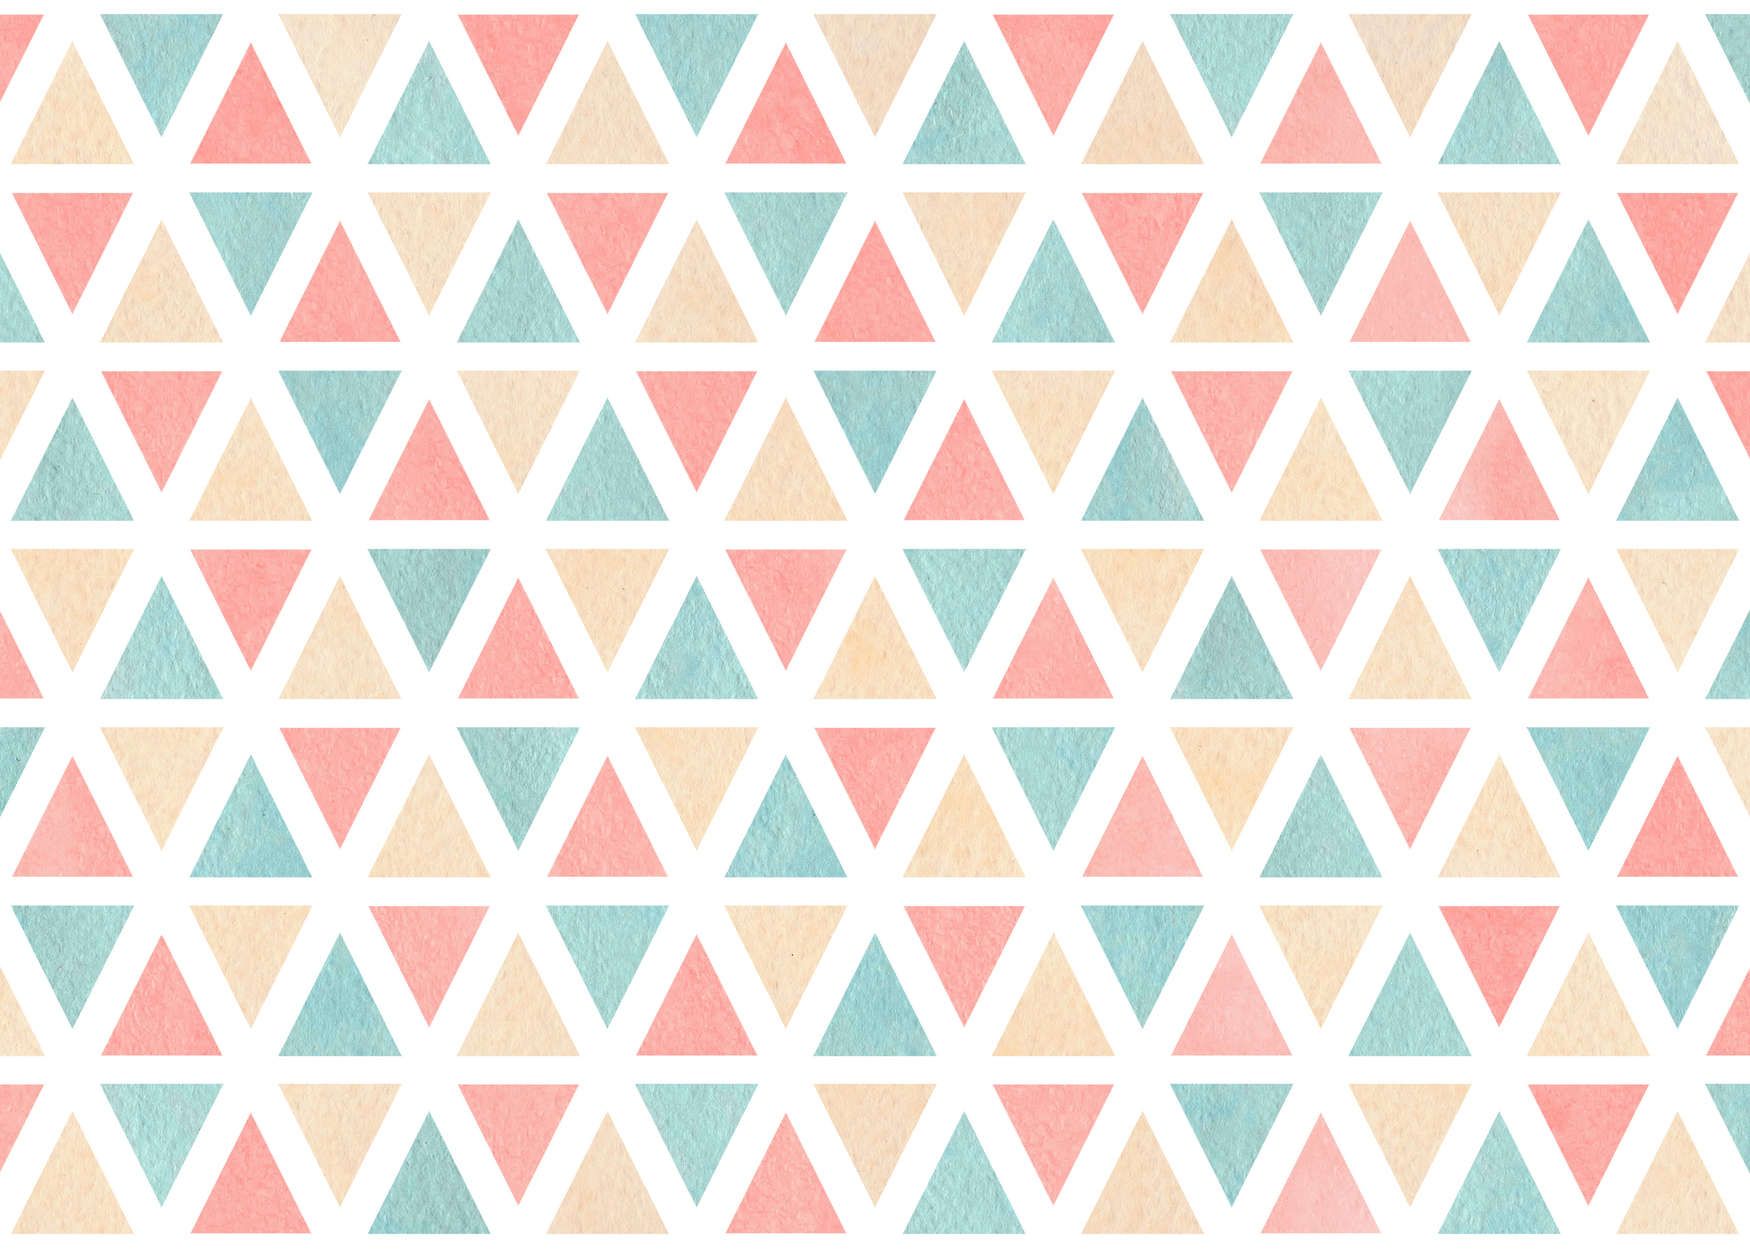             papier peint en papier graphique avec triangles multicolores - intissé lisse & nacré
        